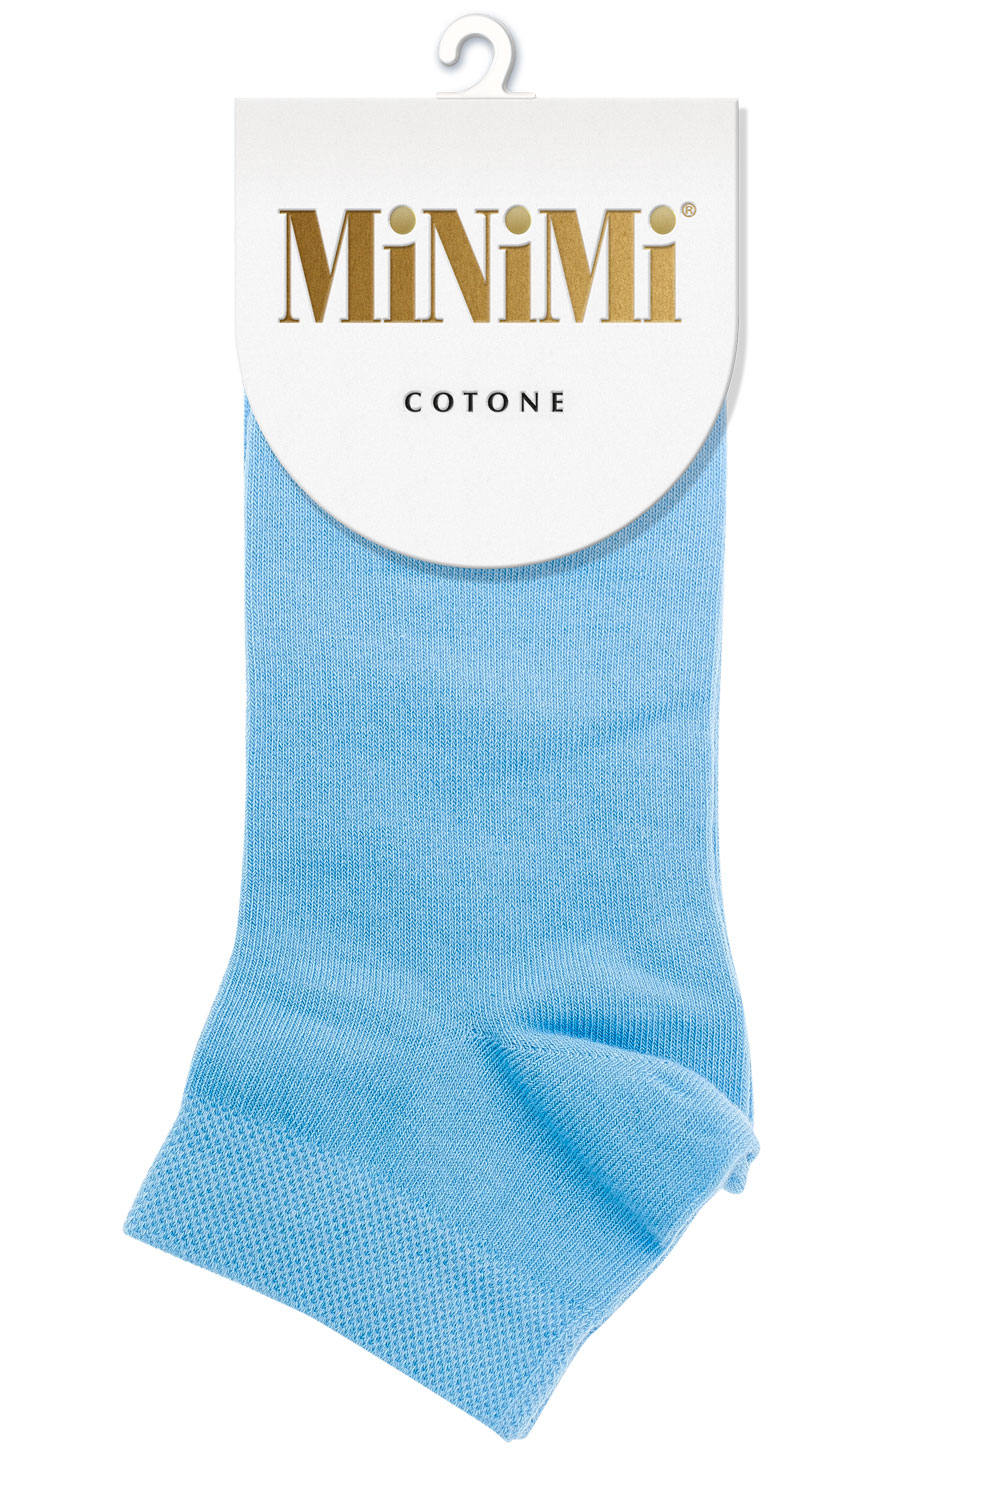 фото Носки женские minimi mini cotone 1201 голубые 39-41